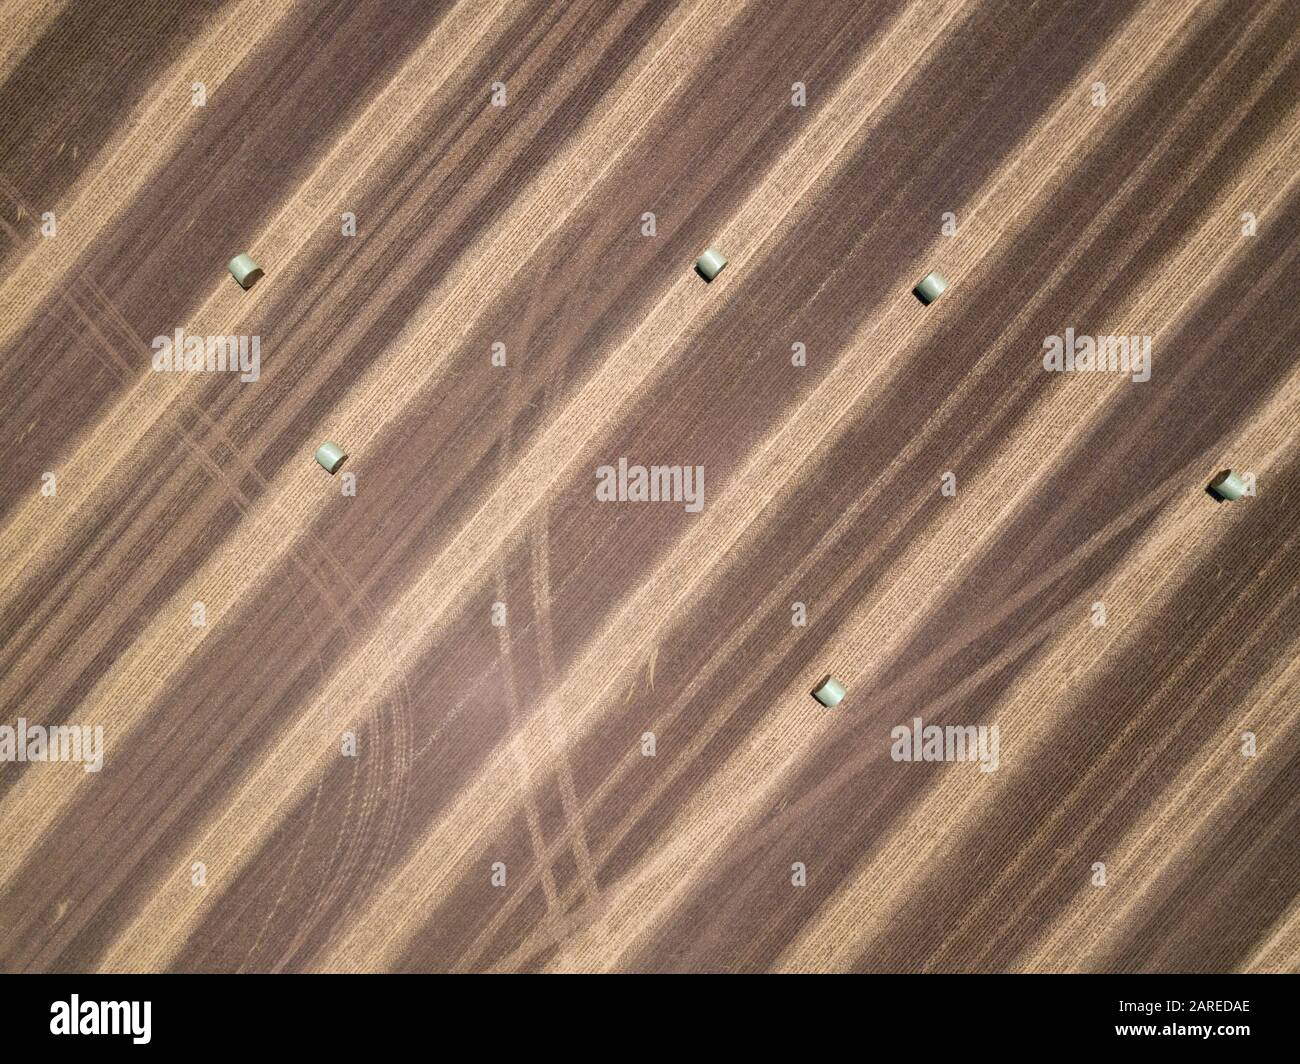 Paesaggio agricolo astratto con balle di fieno, piste e modelli di fondo, vista aerea, Victoria, Australia Foto Stock